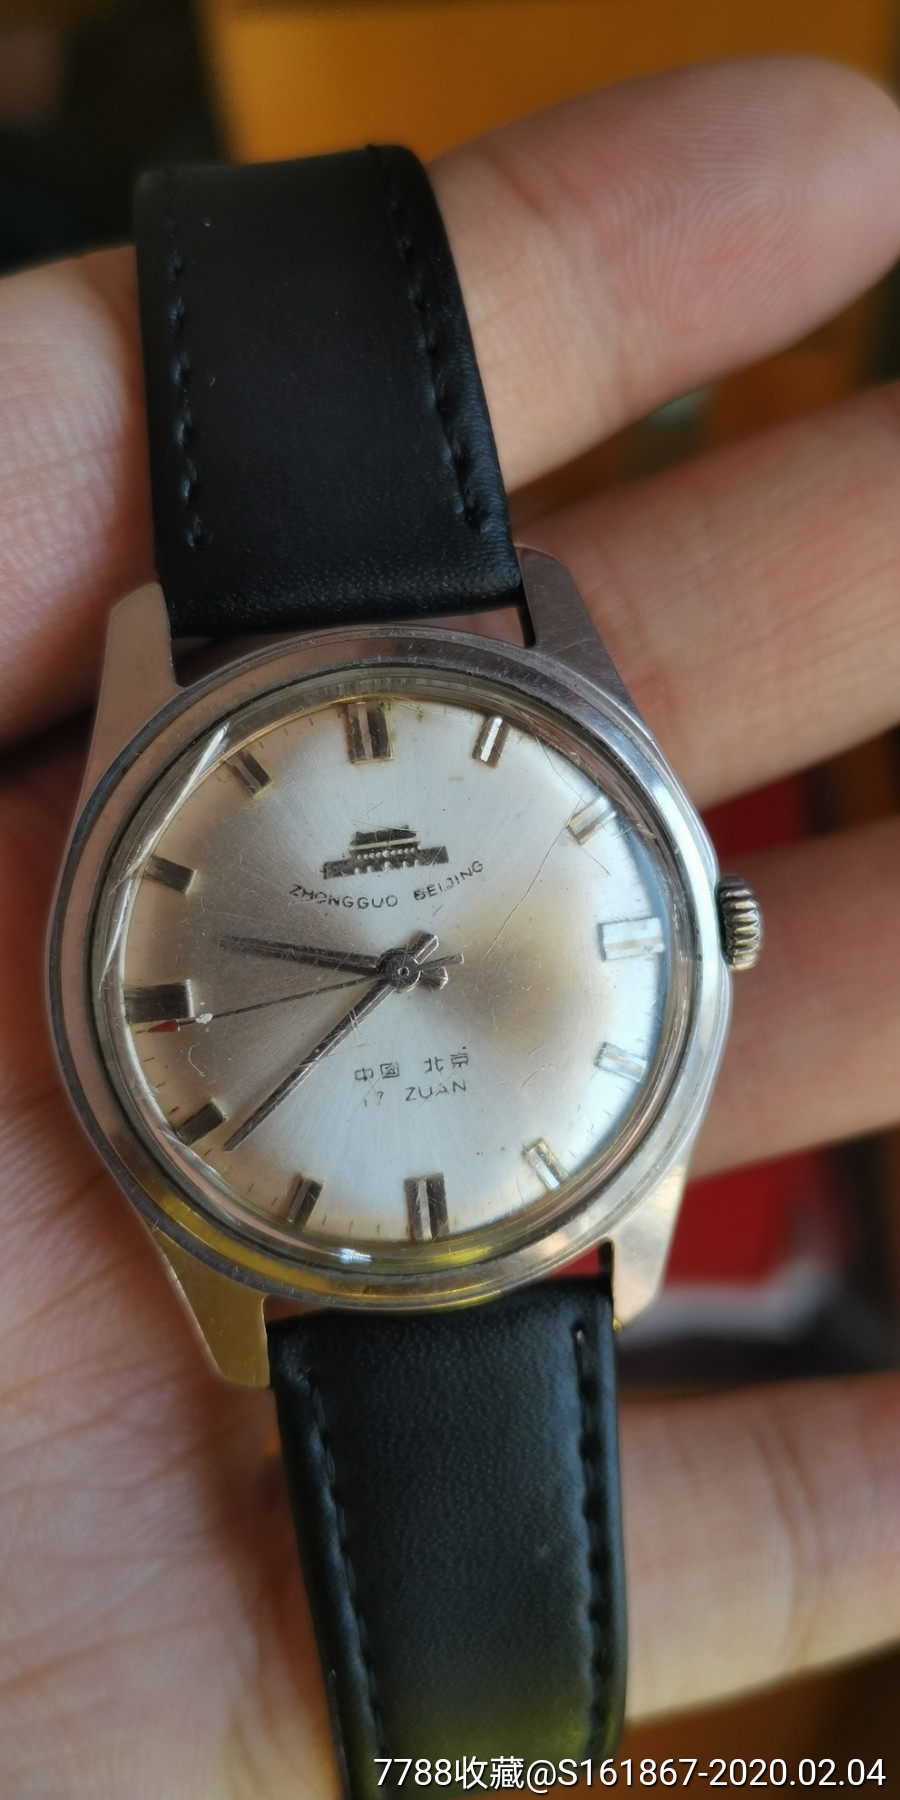 罕见的特殊老北京手动机械男表-价格:1180元-se70943612-手表/腕表